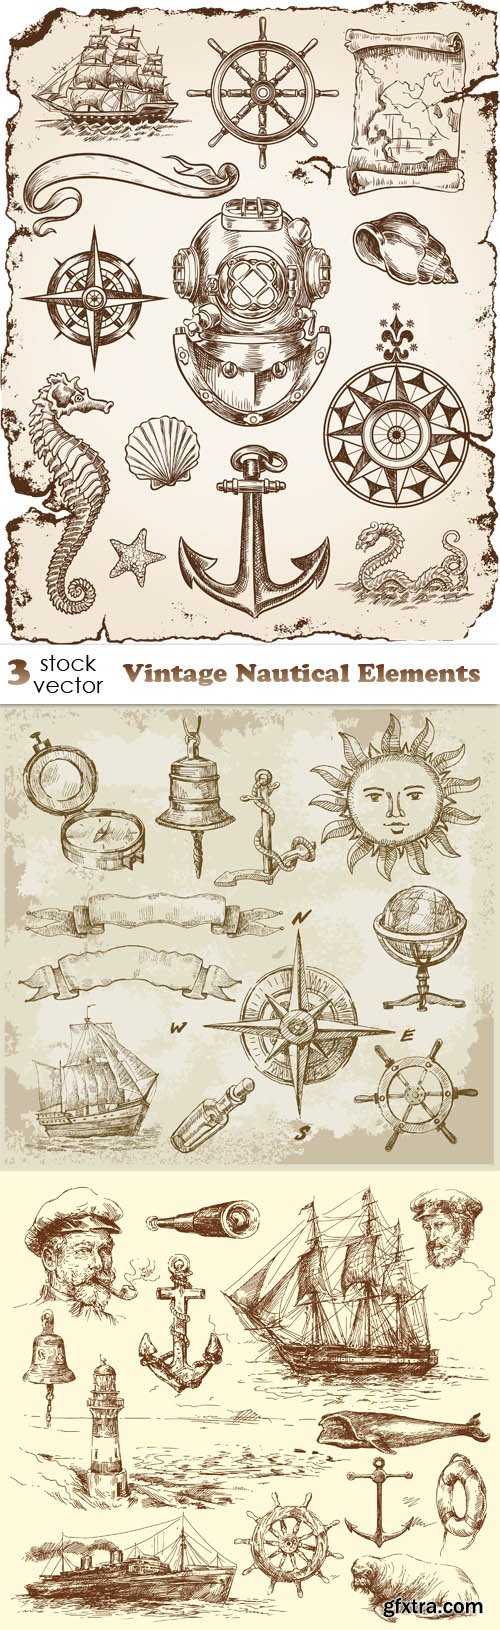 Vectors - Vintage Nautical Elements